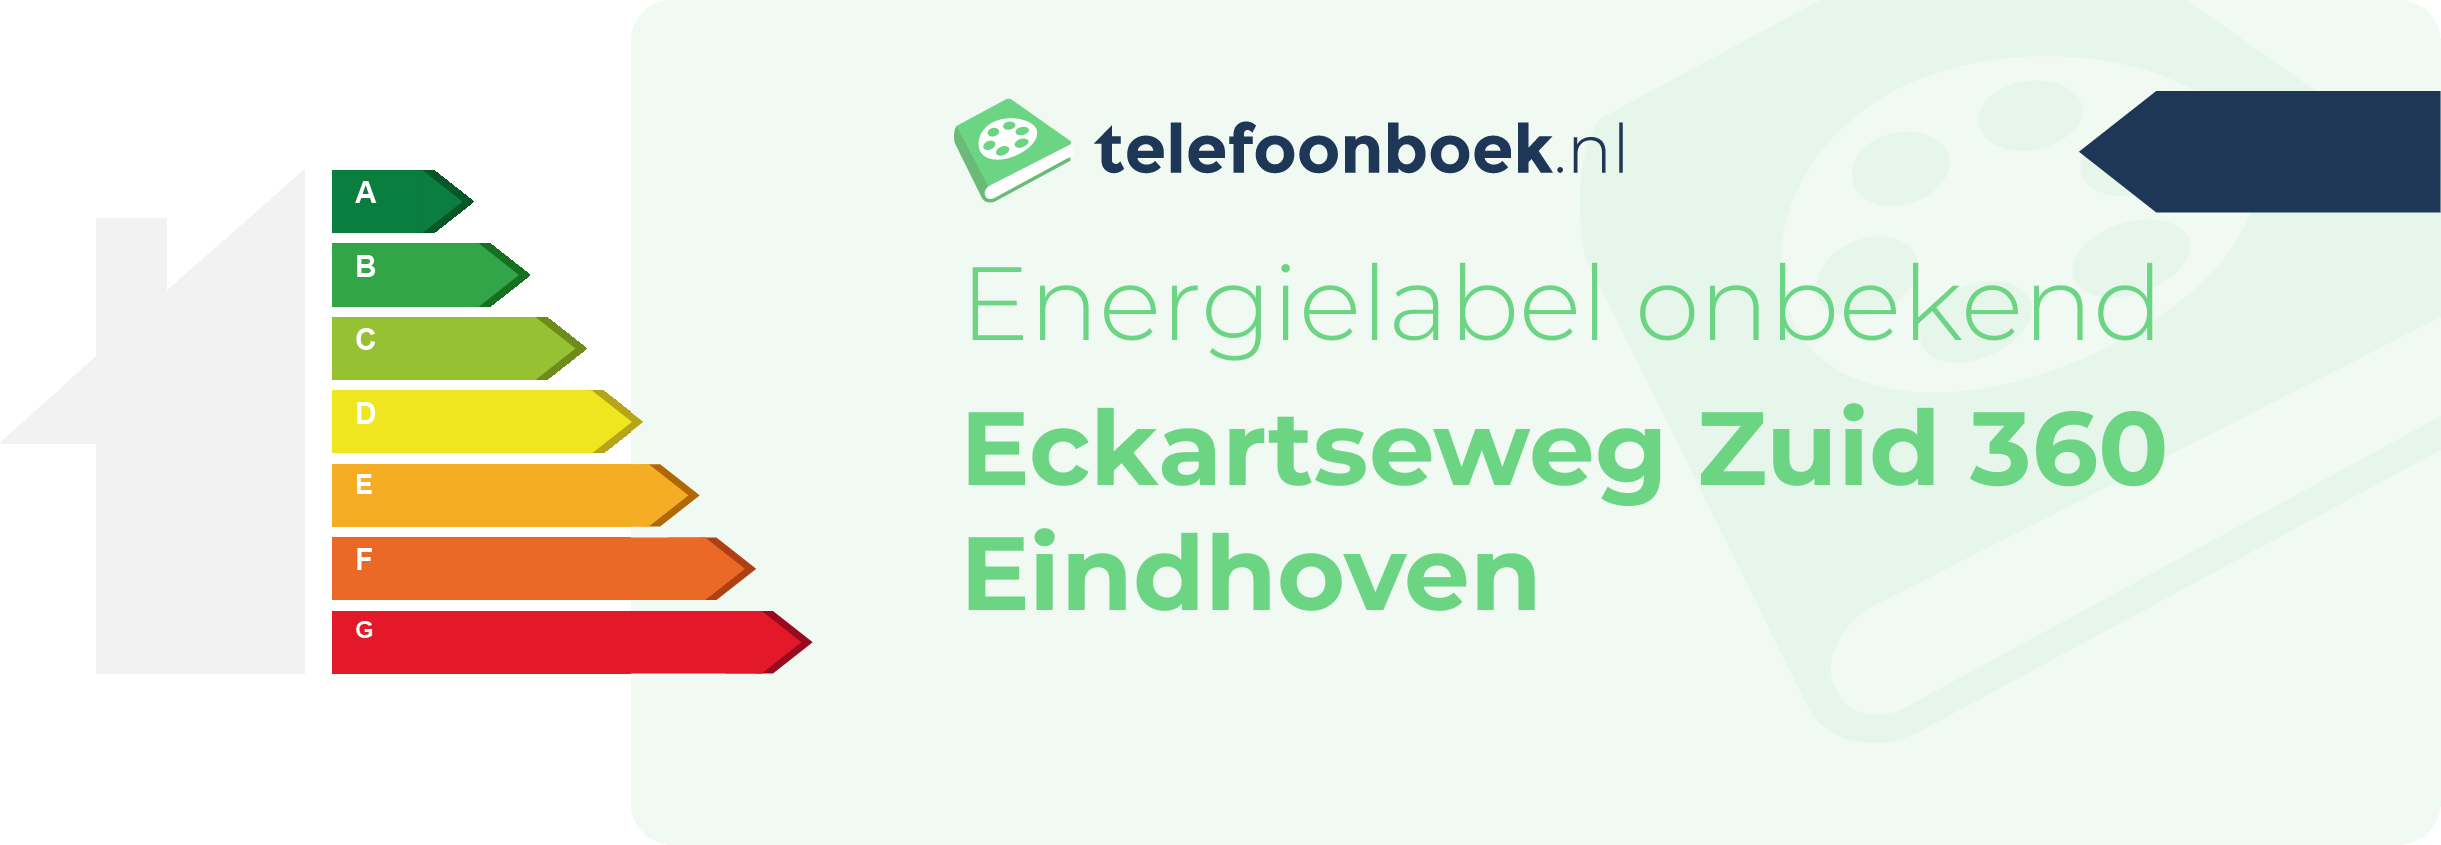 Energielabel Eckartseweg Zuid 360 Eindhoven